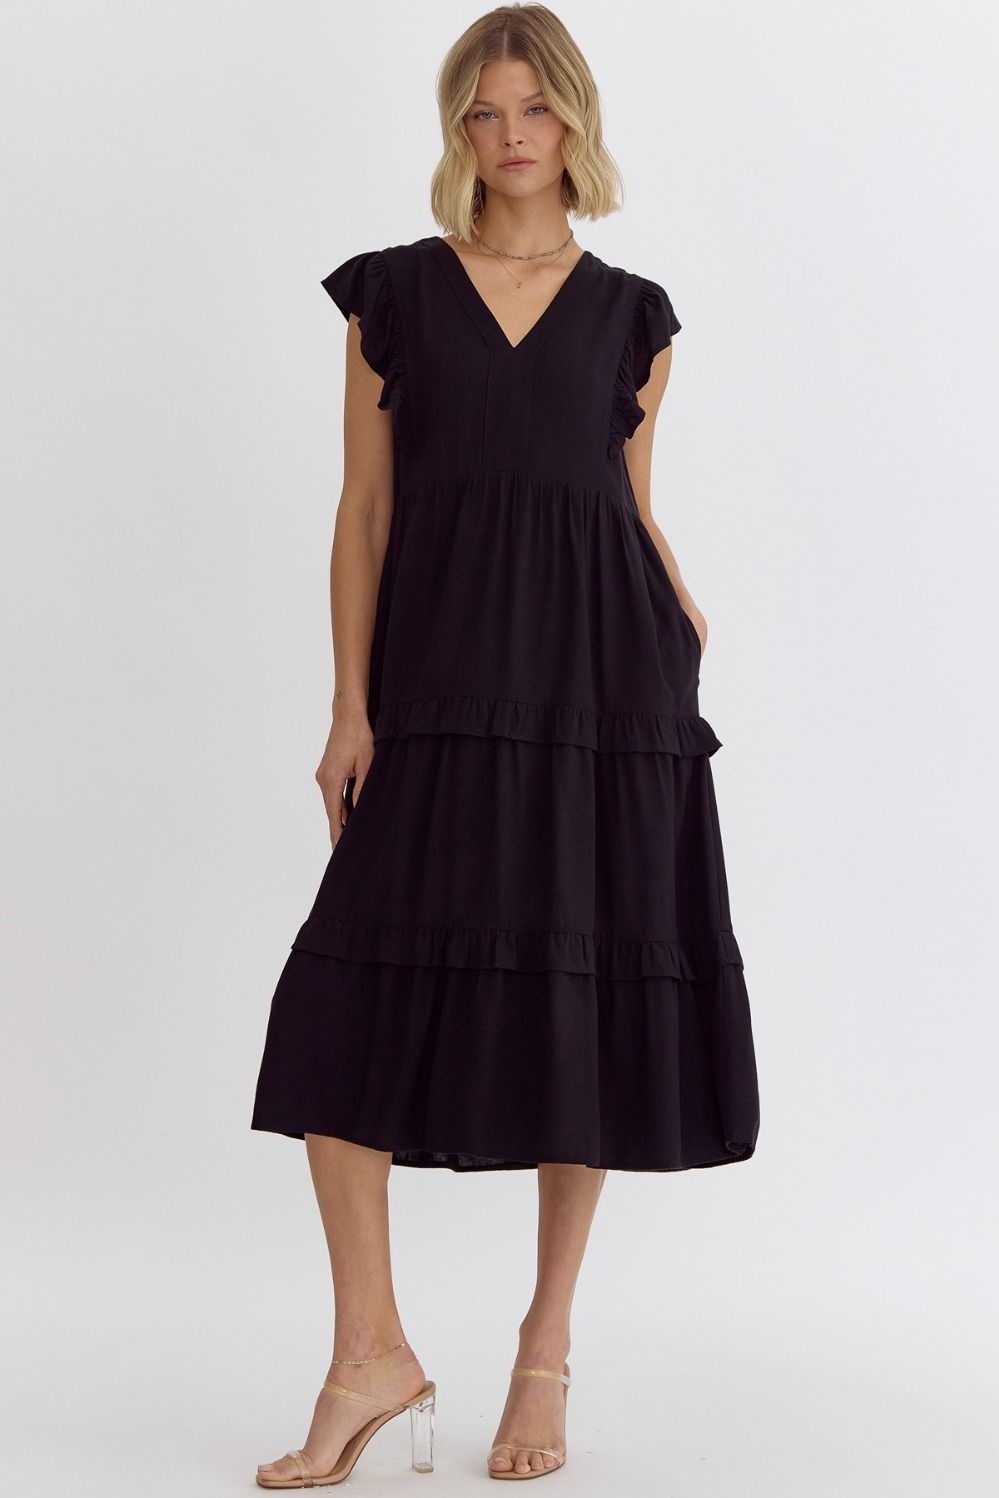 Classic Black Tiered Midi Dress